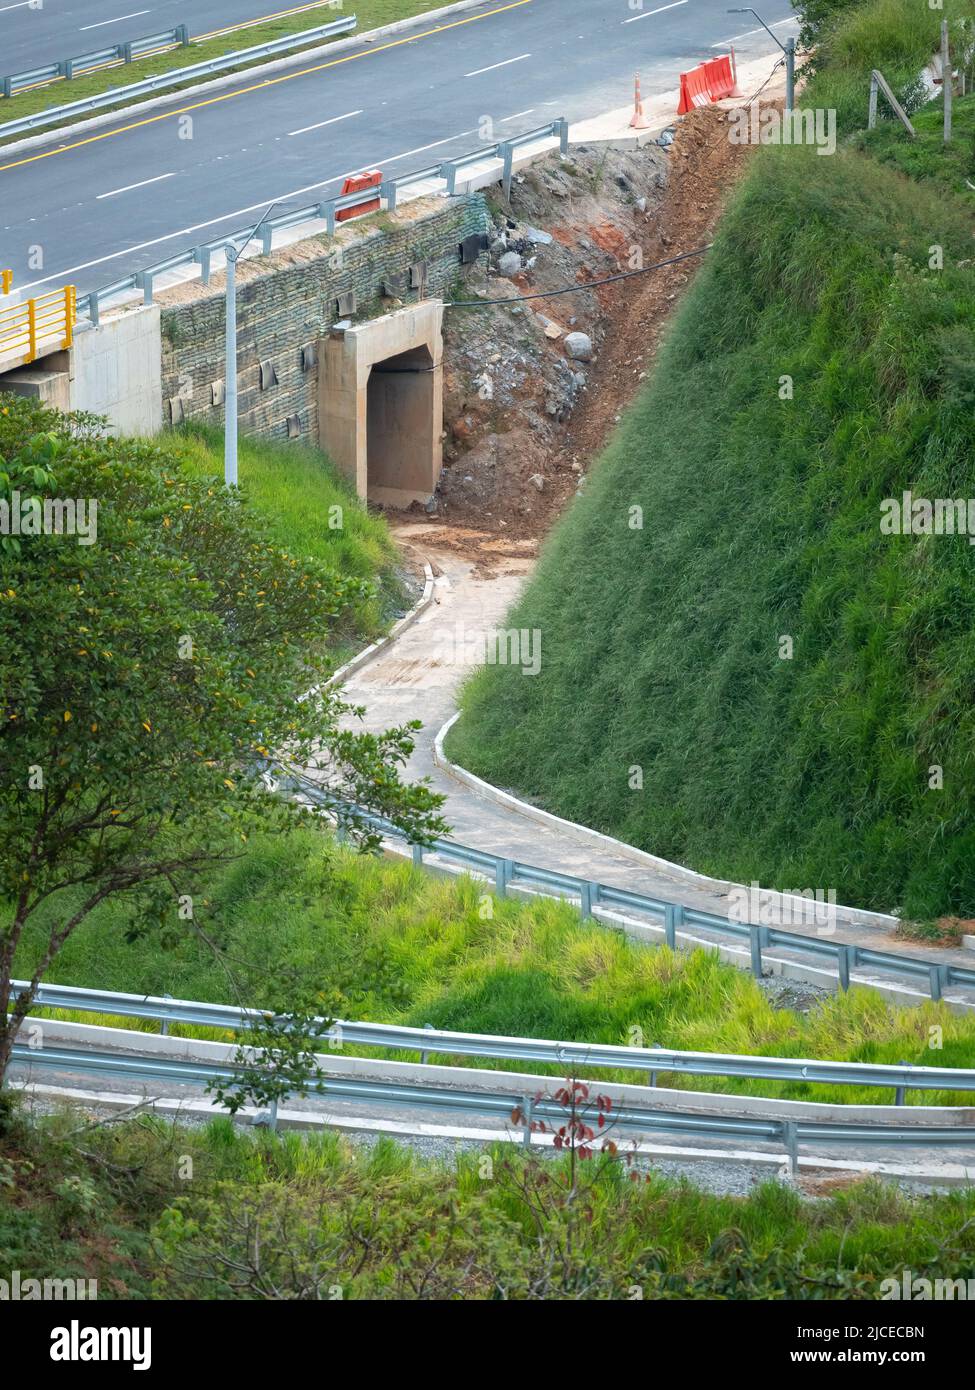 Enge Straße unter einer Brücke, an der Autos vorbei fahren und ein Tunnel im Bau mit viel Schlamm Stockfoto